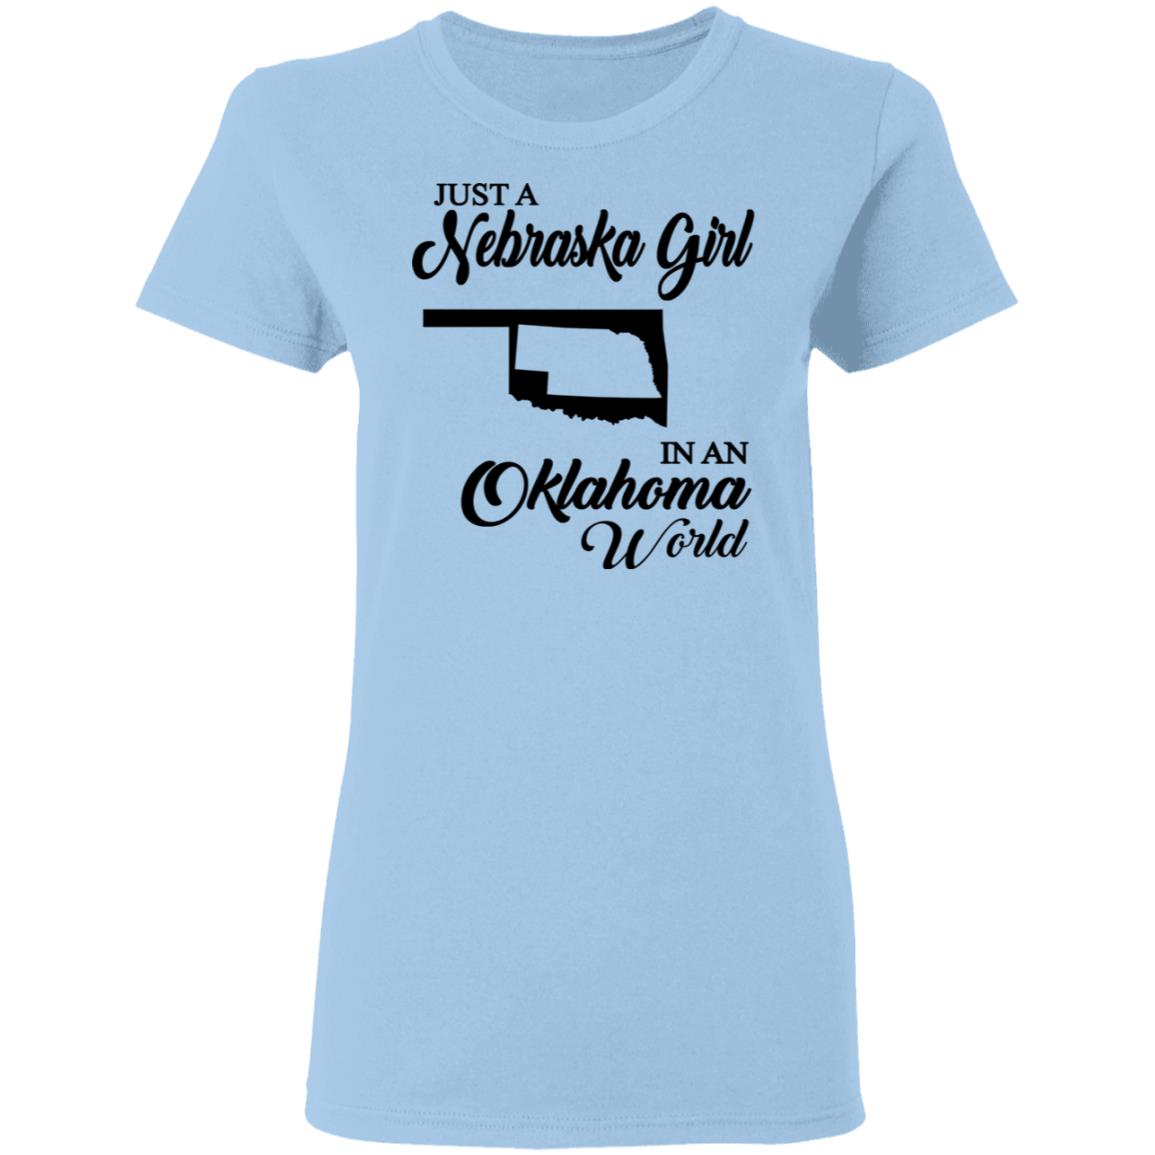 Just A Nebraska Girl In An Oklahoma World T-Shirt - T-shirt Teezalo